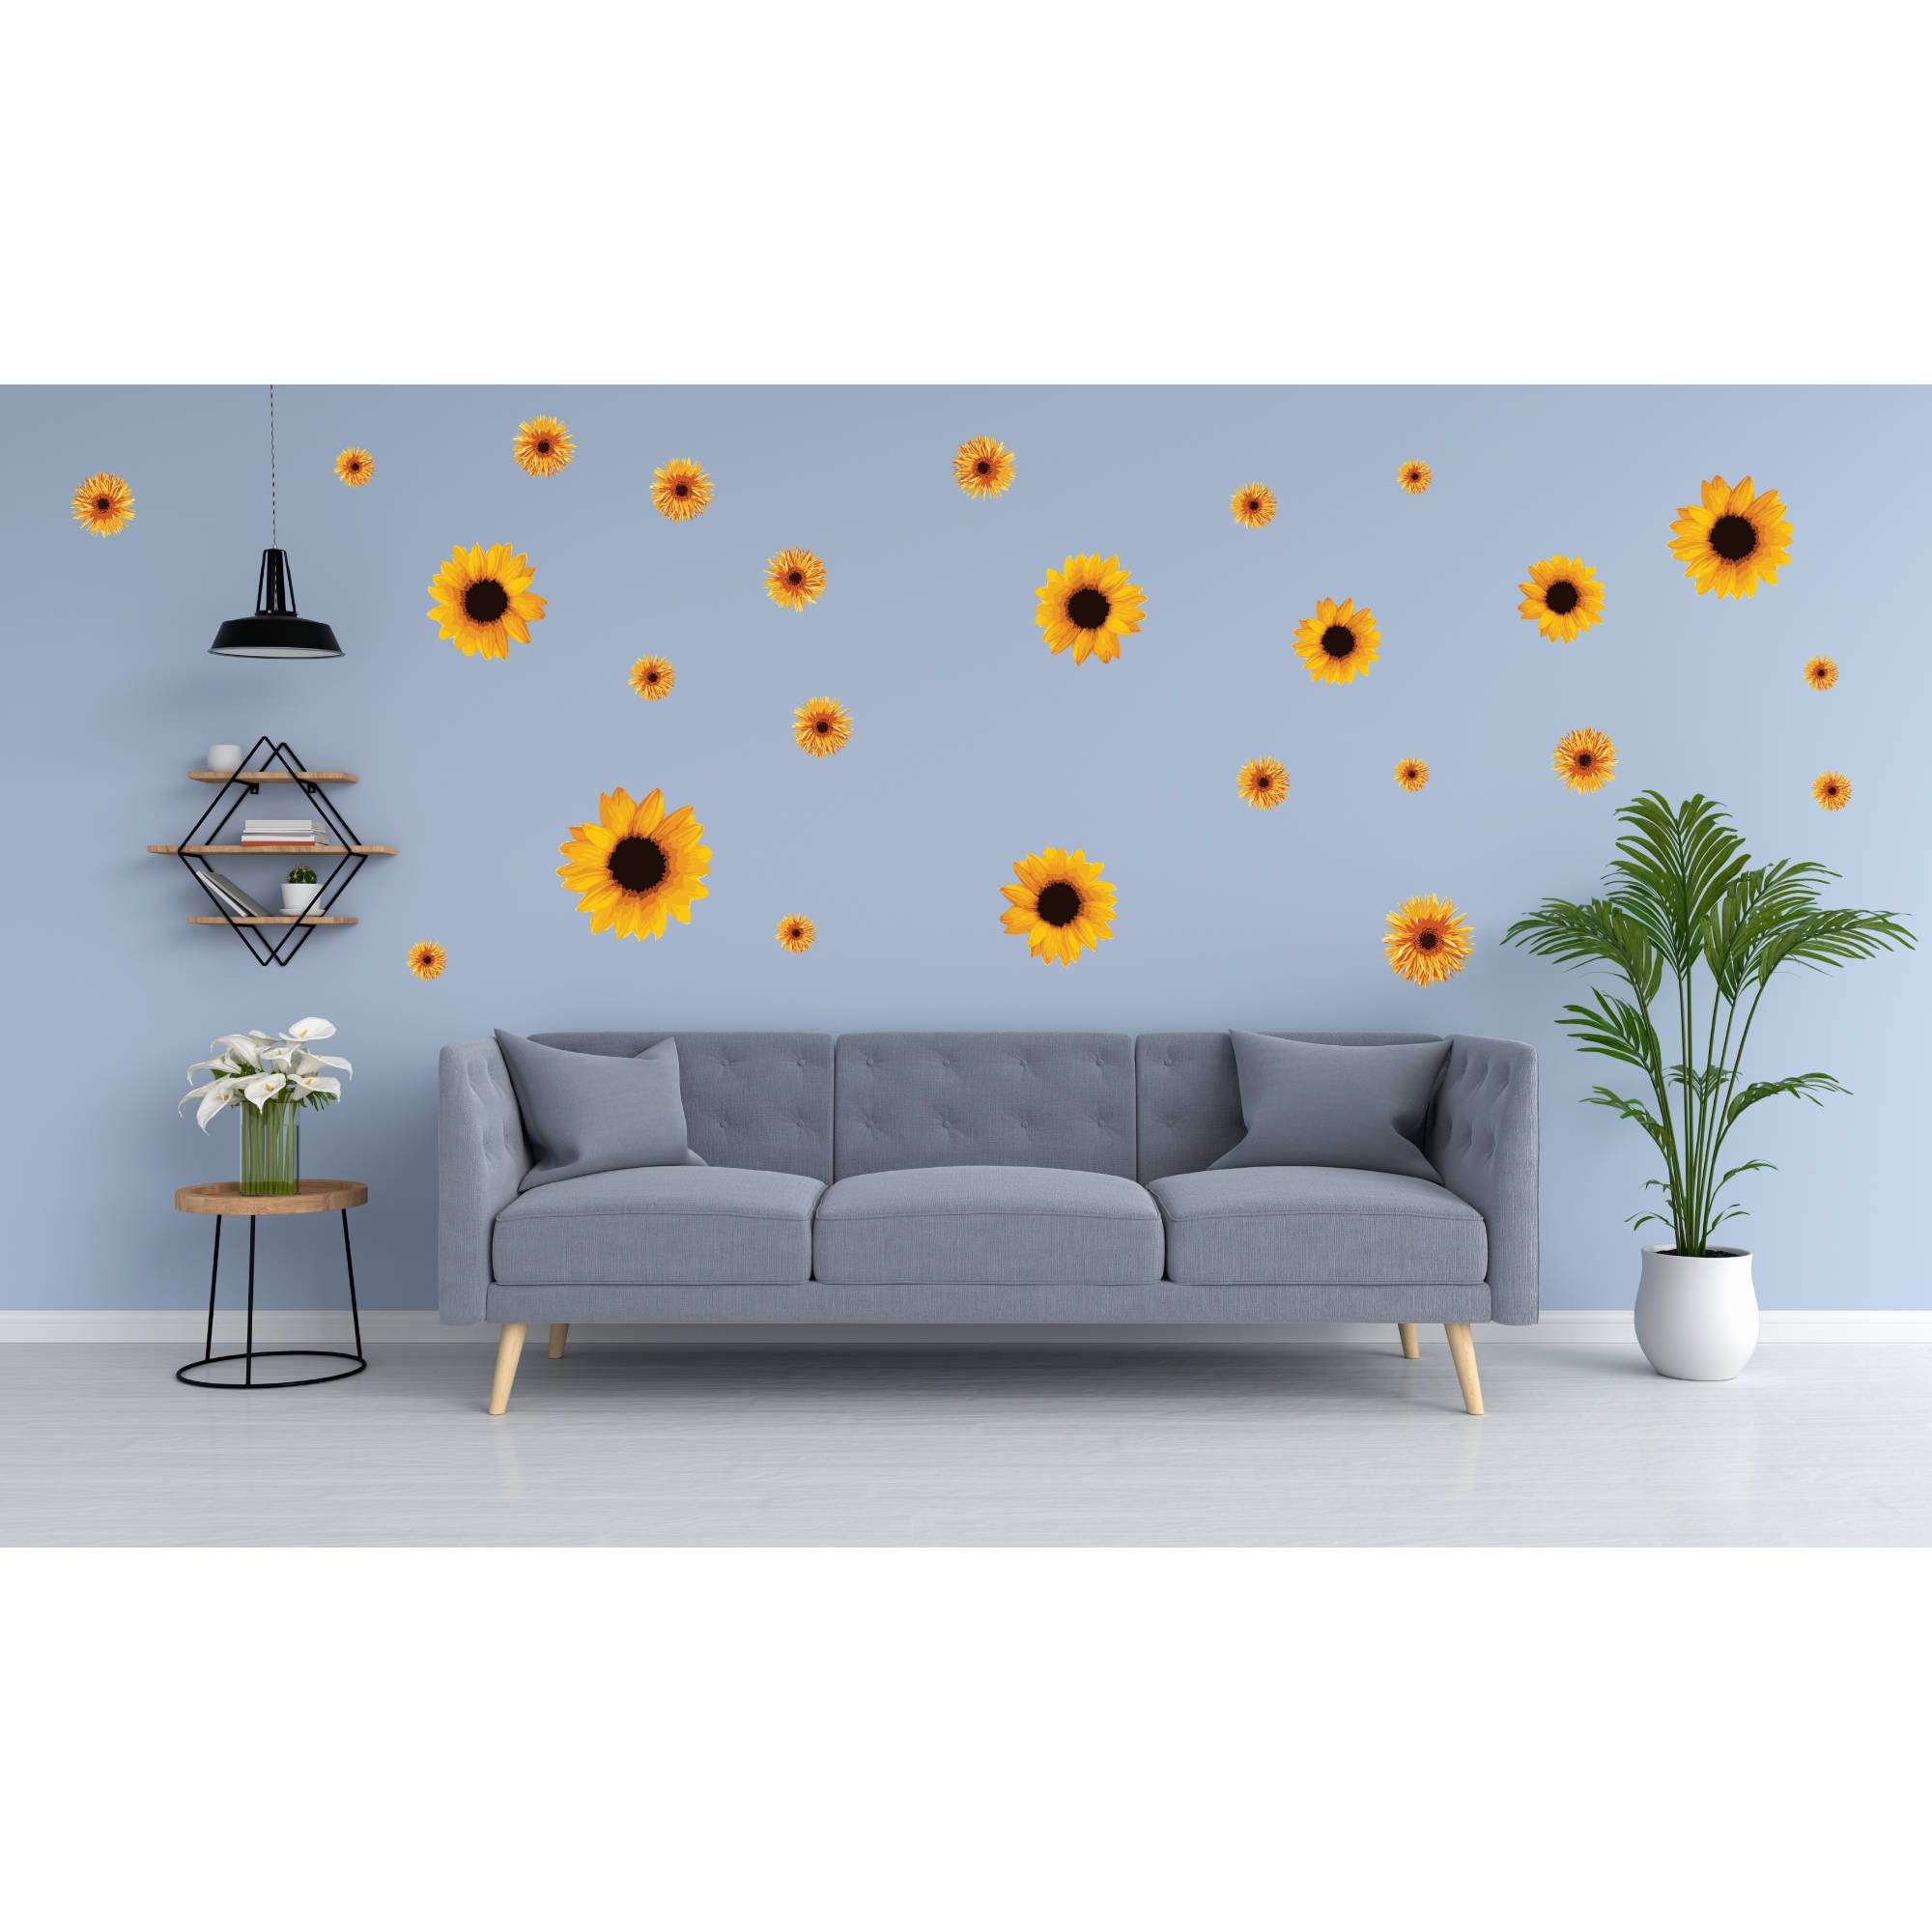 Sticker decorativ perete, living, Floarea soarelui, PT1465, 60 x 90 cm